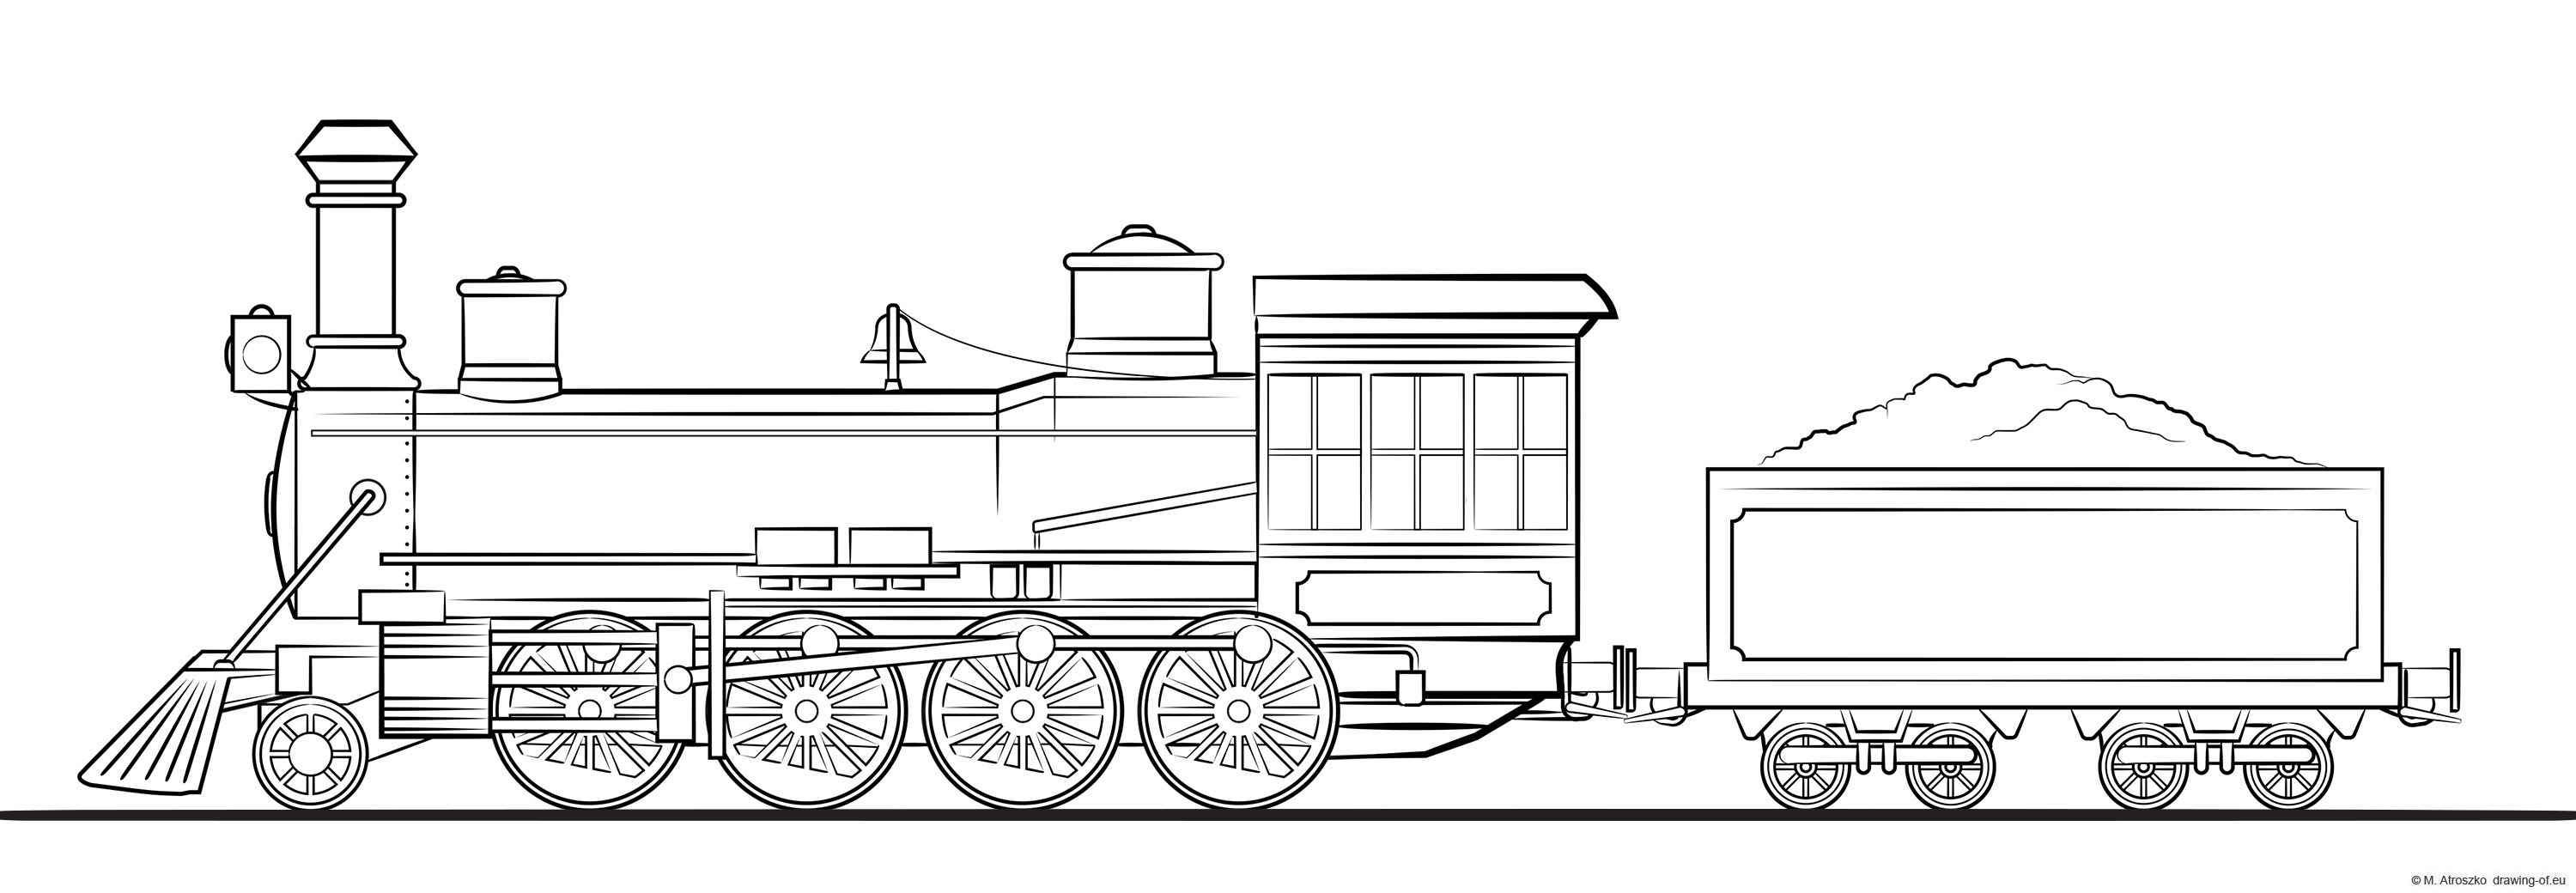 steam train - locomotive with tender